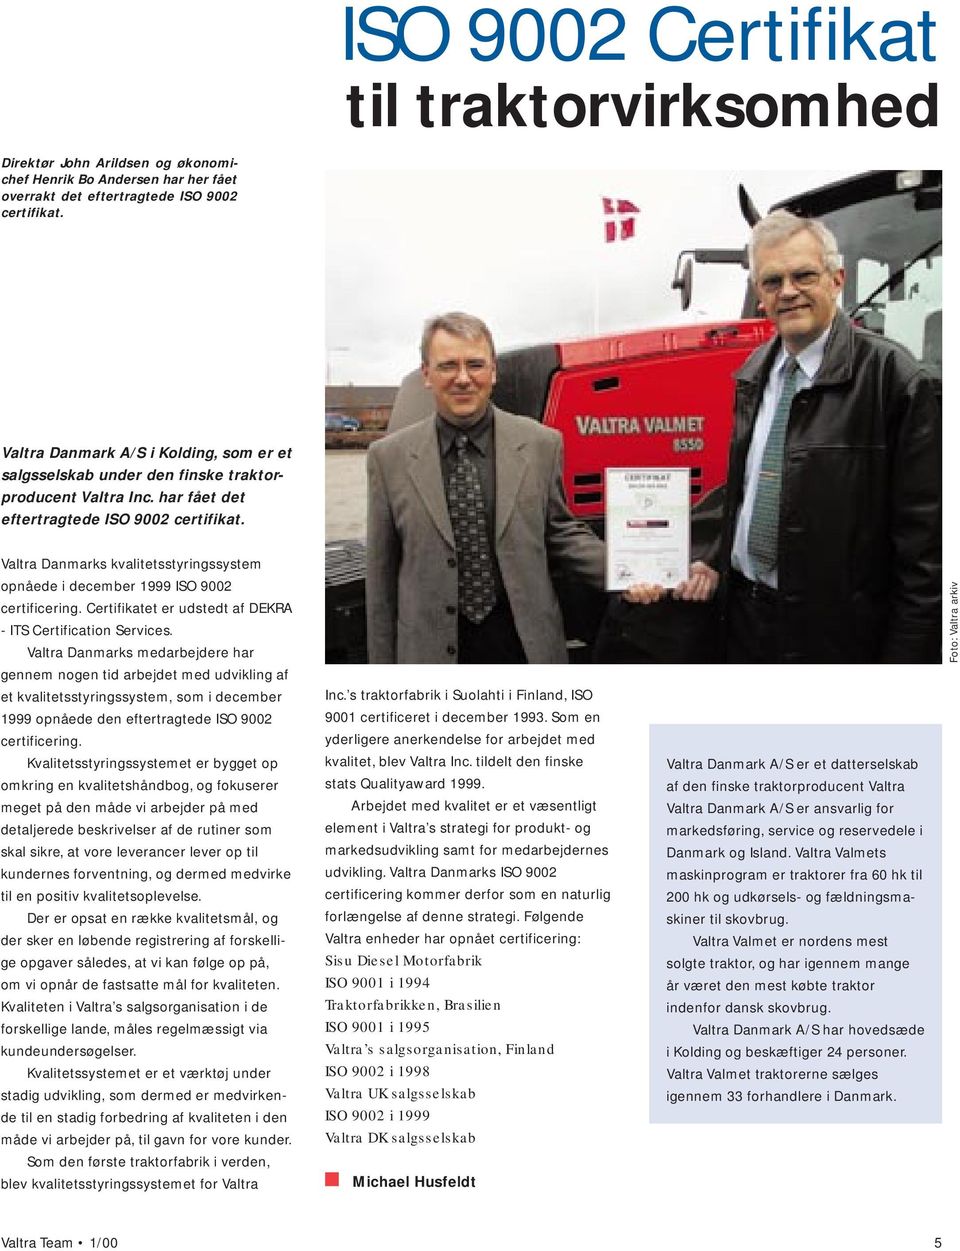 Valtra Danmarks kvalitetsstyringssystem opnåede i december 1999 ISO 9002 certificering. Certifikatet er udstedt af DEKRA - ITS Certification Services.